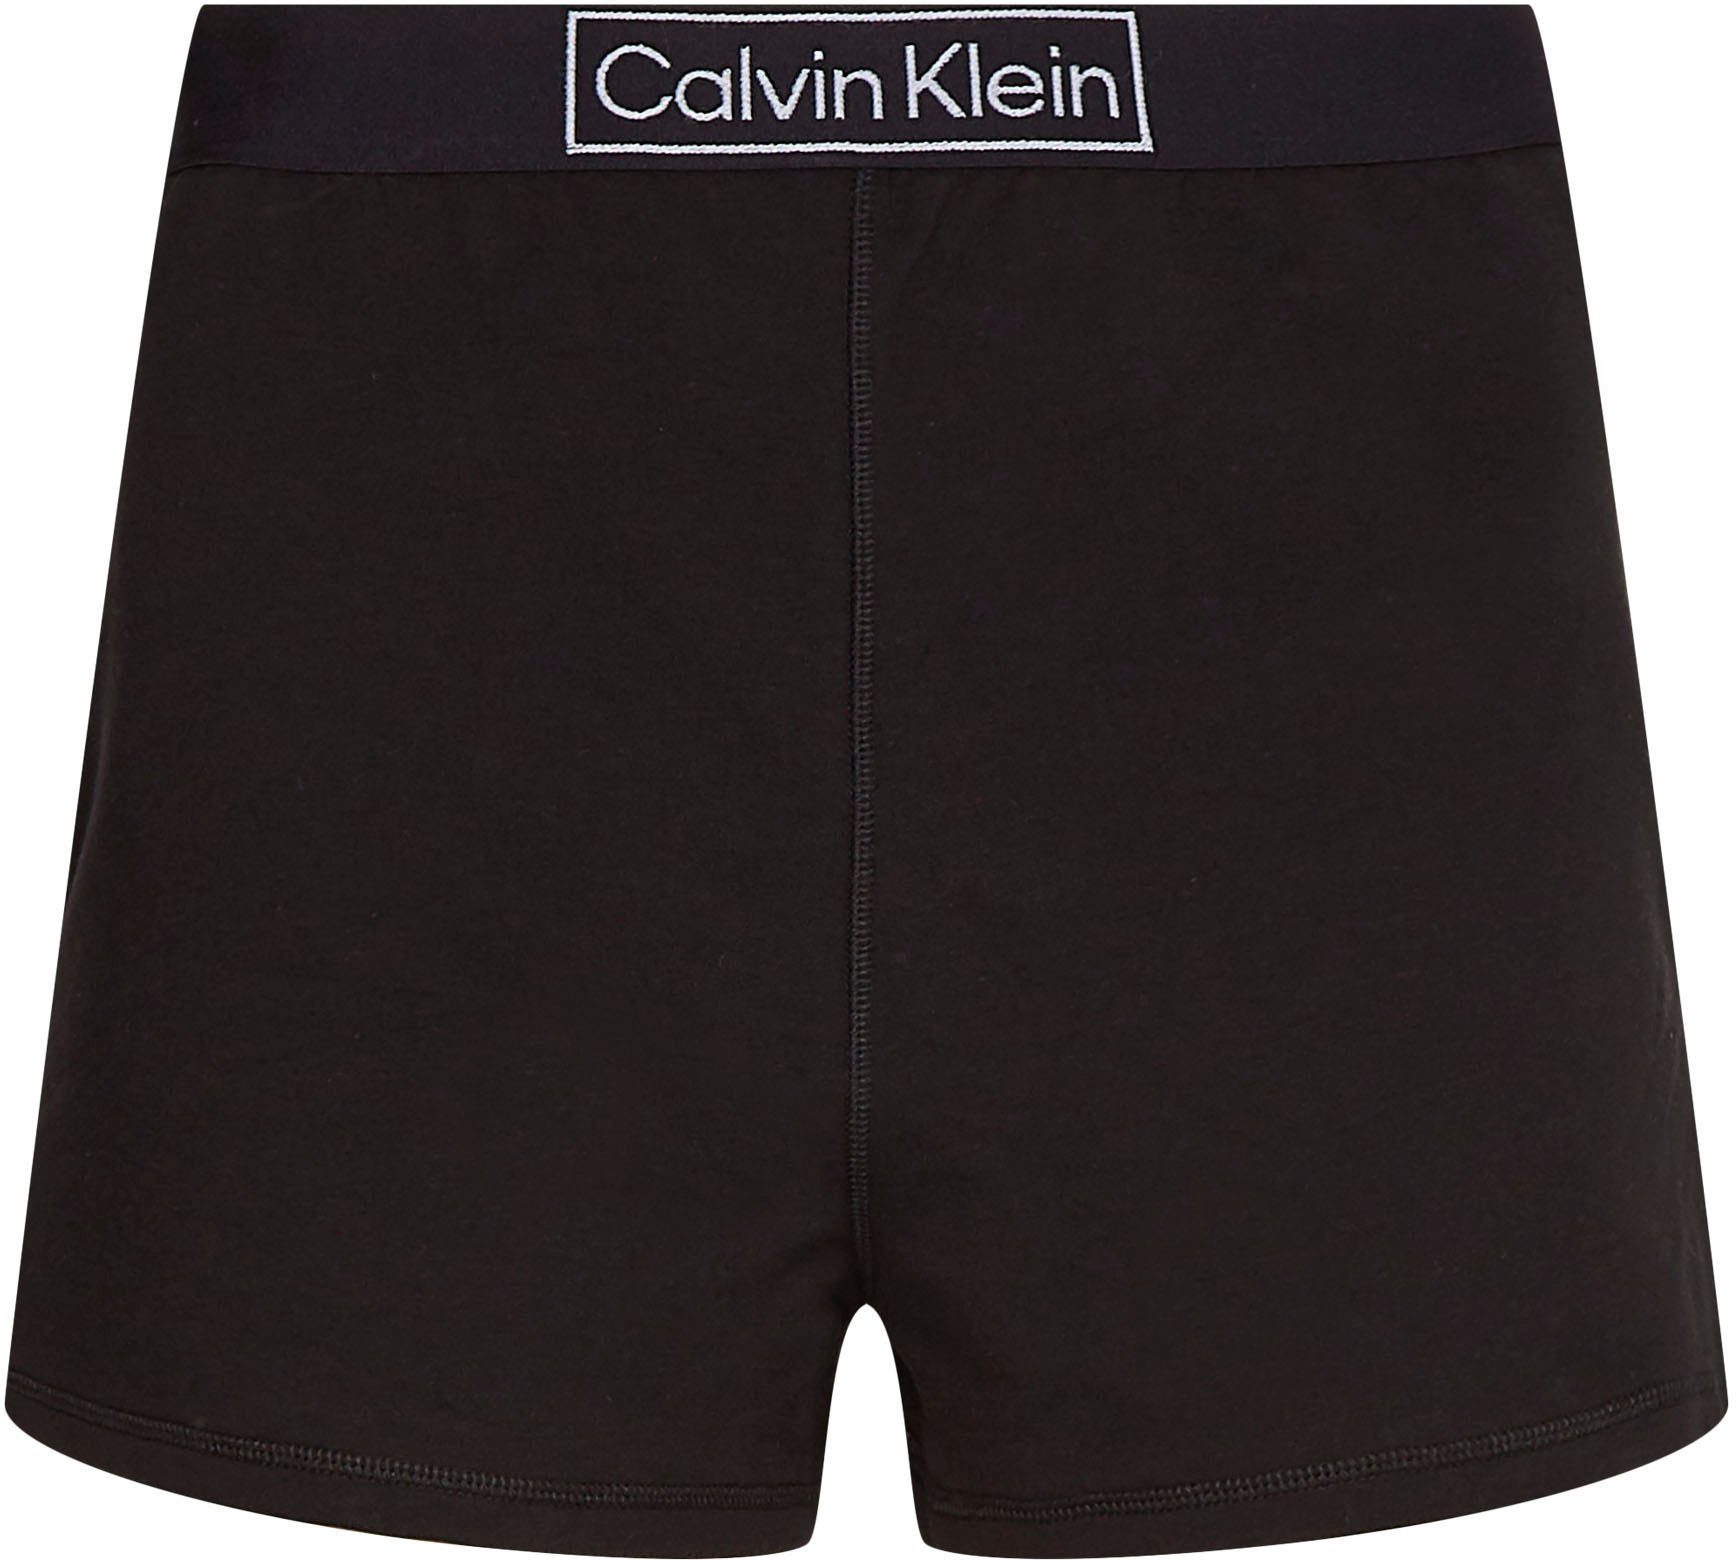 Underwear Gummizug Calvin Schlafshorts mit bequemen Klein